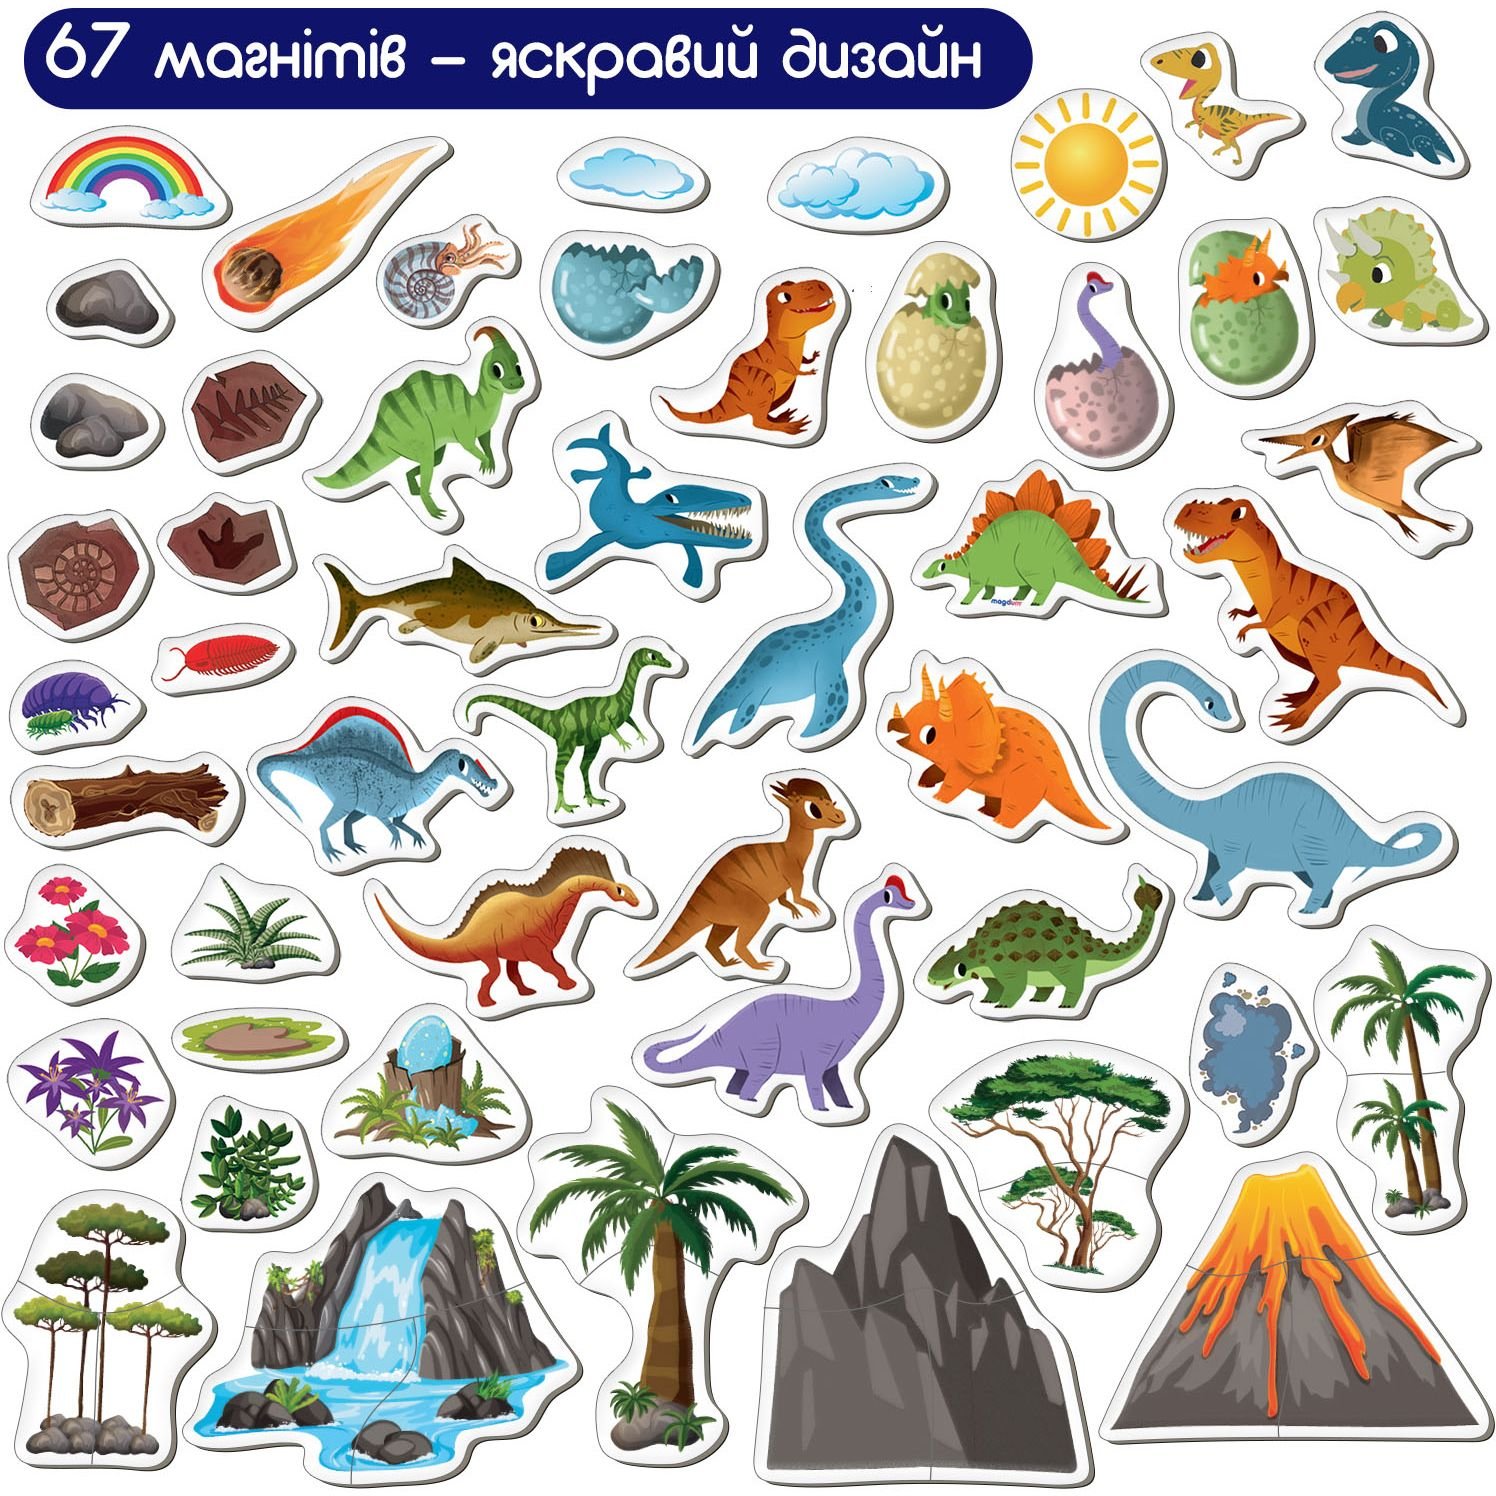 Набір магнітів Magdum Magnetic game Світ динозаврів 67 шт. (ML4032-04 EN) - фото 2